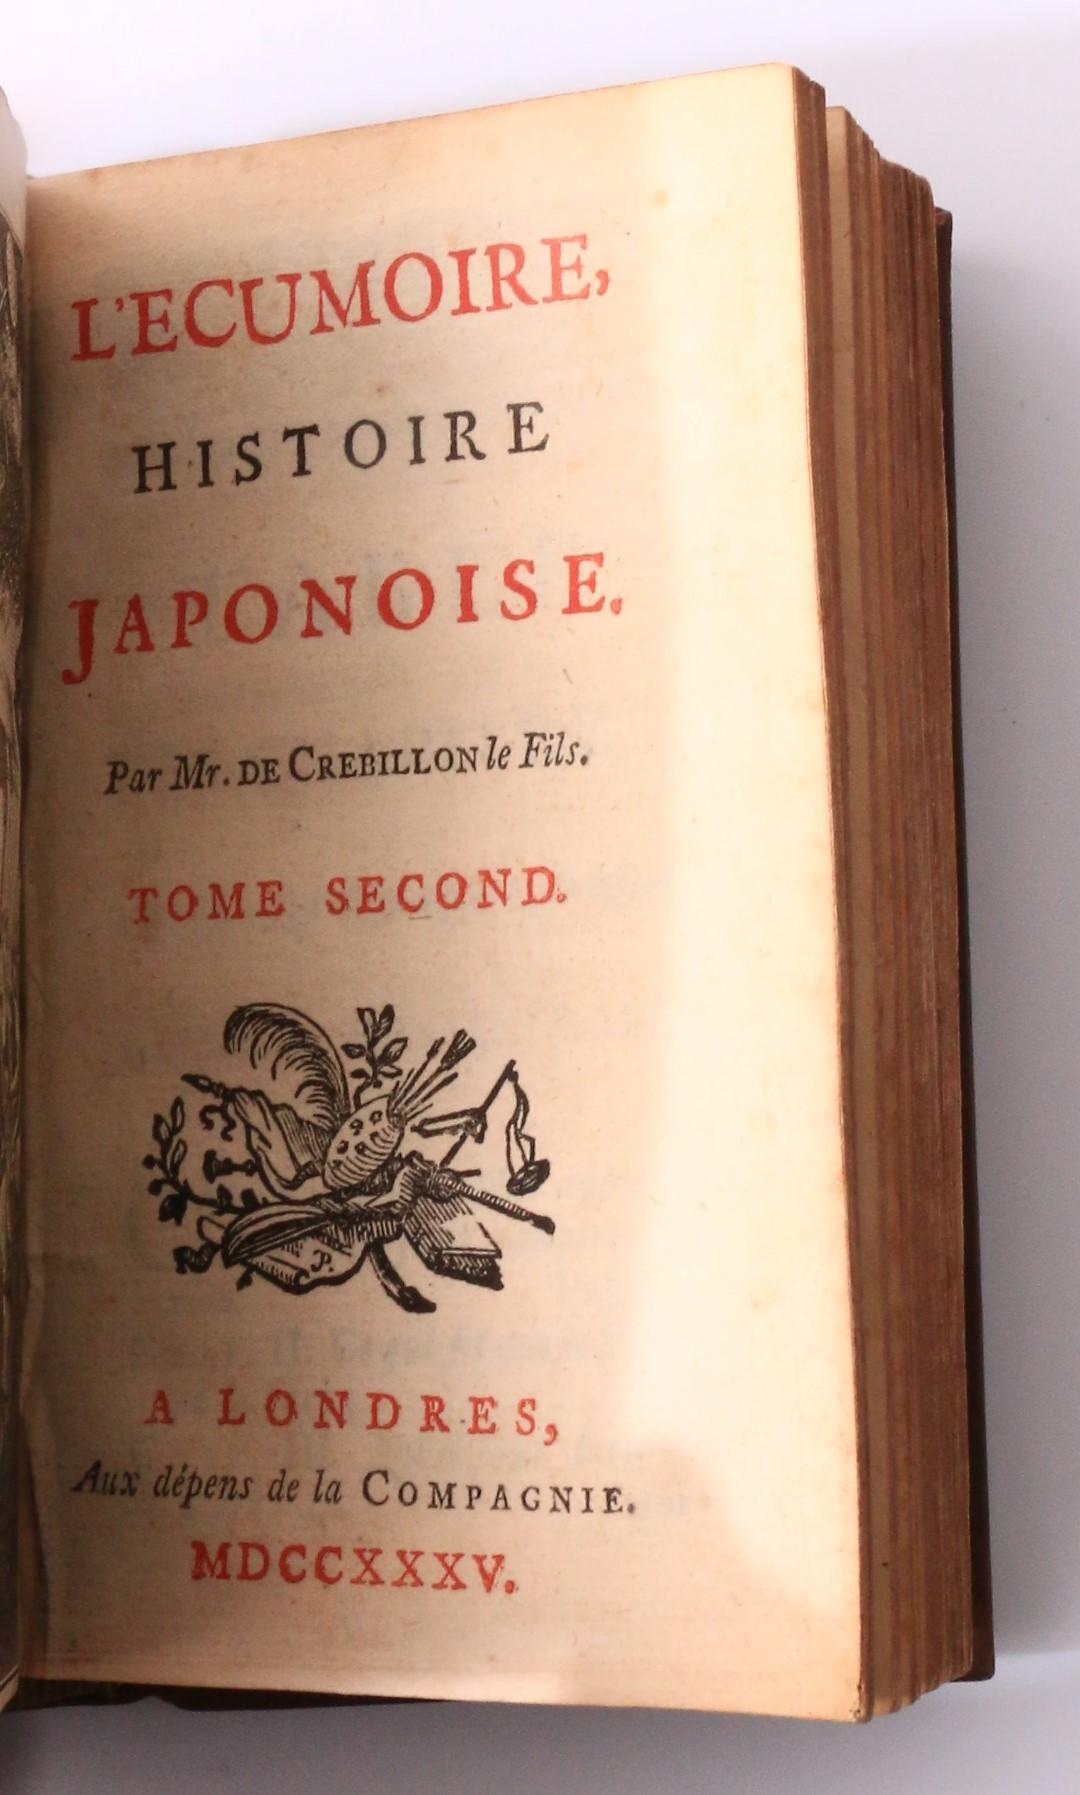 Claude Prosper Jolyot de Crebillon [Crebillon fils] - L'ecumoire, Histoire Japonoise [actually Tanzai et Neadarne] - No Publisher, 1735, Second Edition.